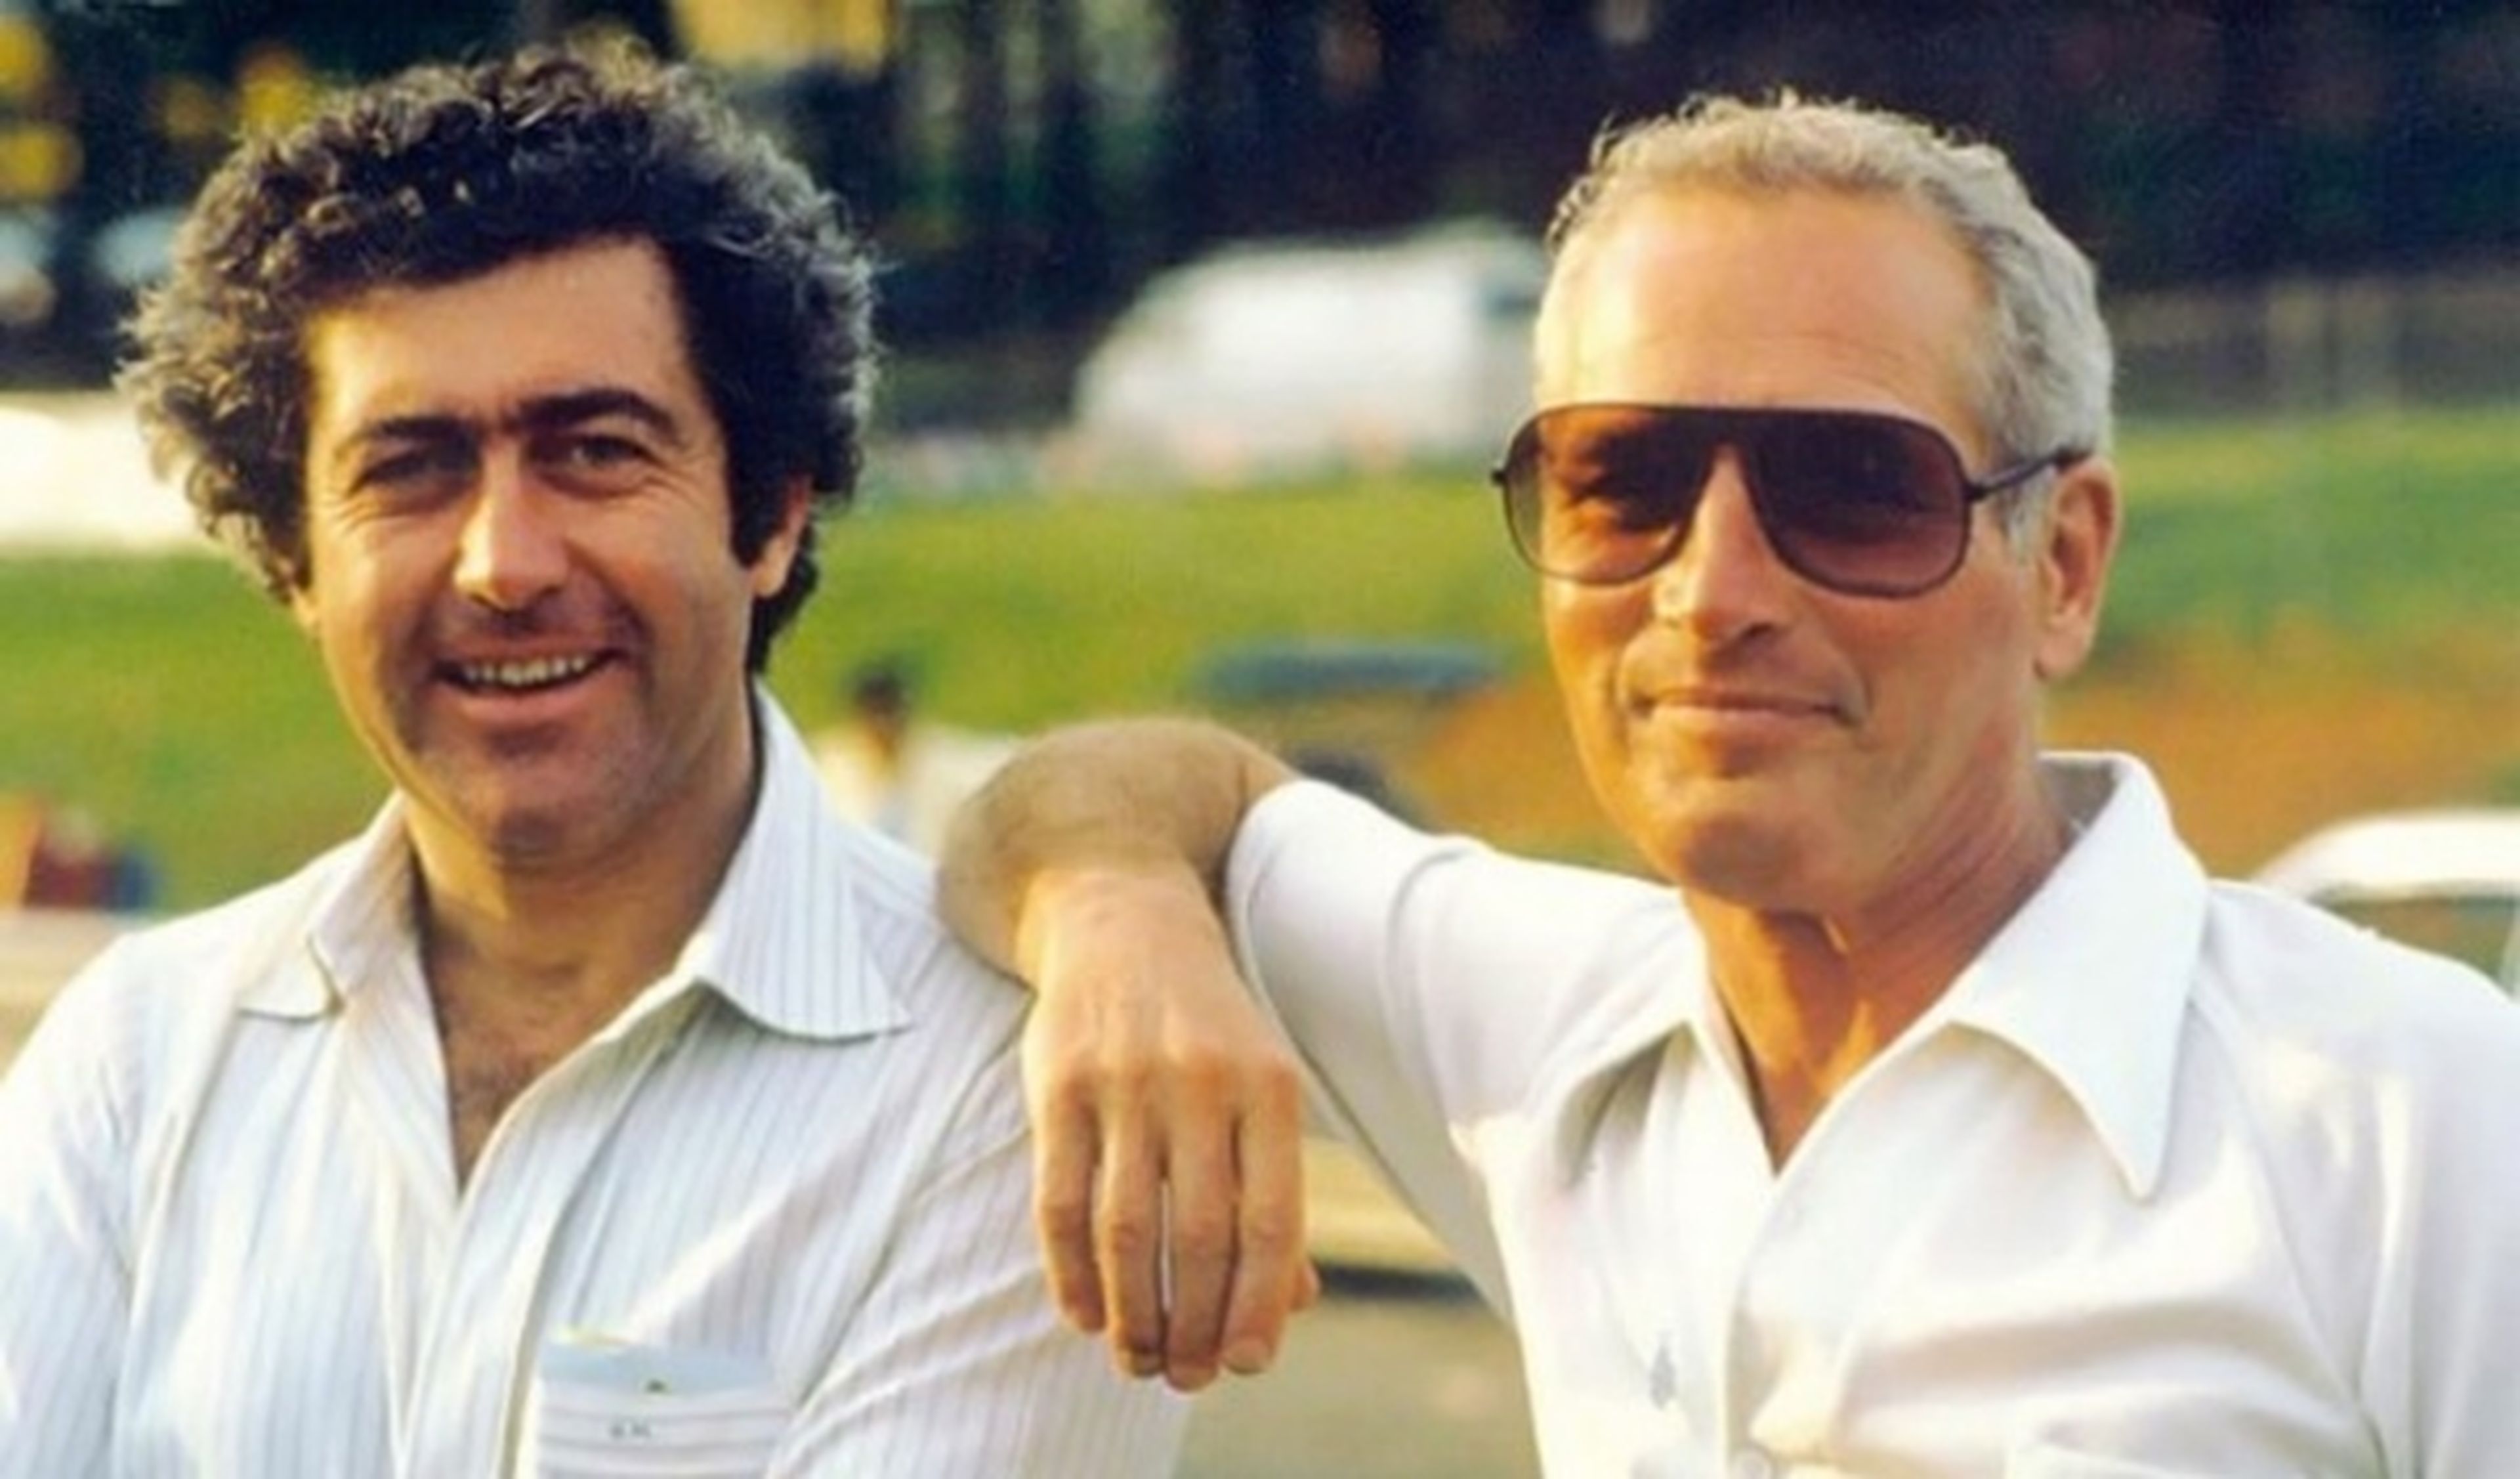 Muere Gianpiero Moretti, fundador de Momo, a los 71 años